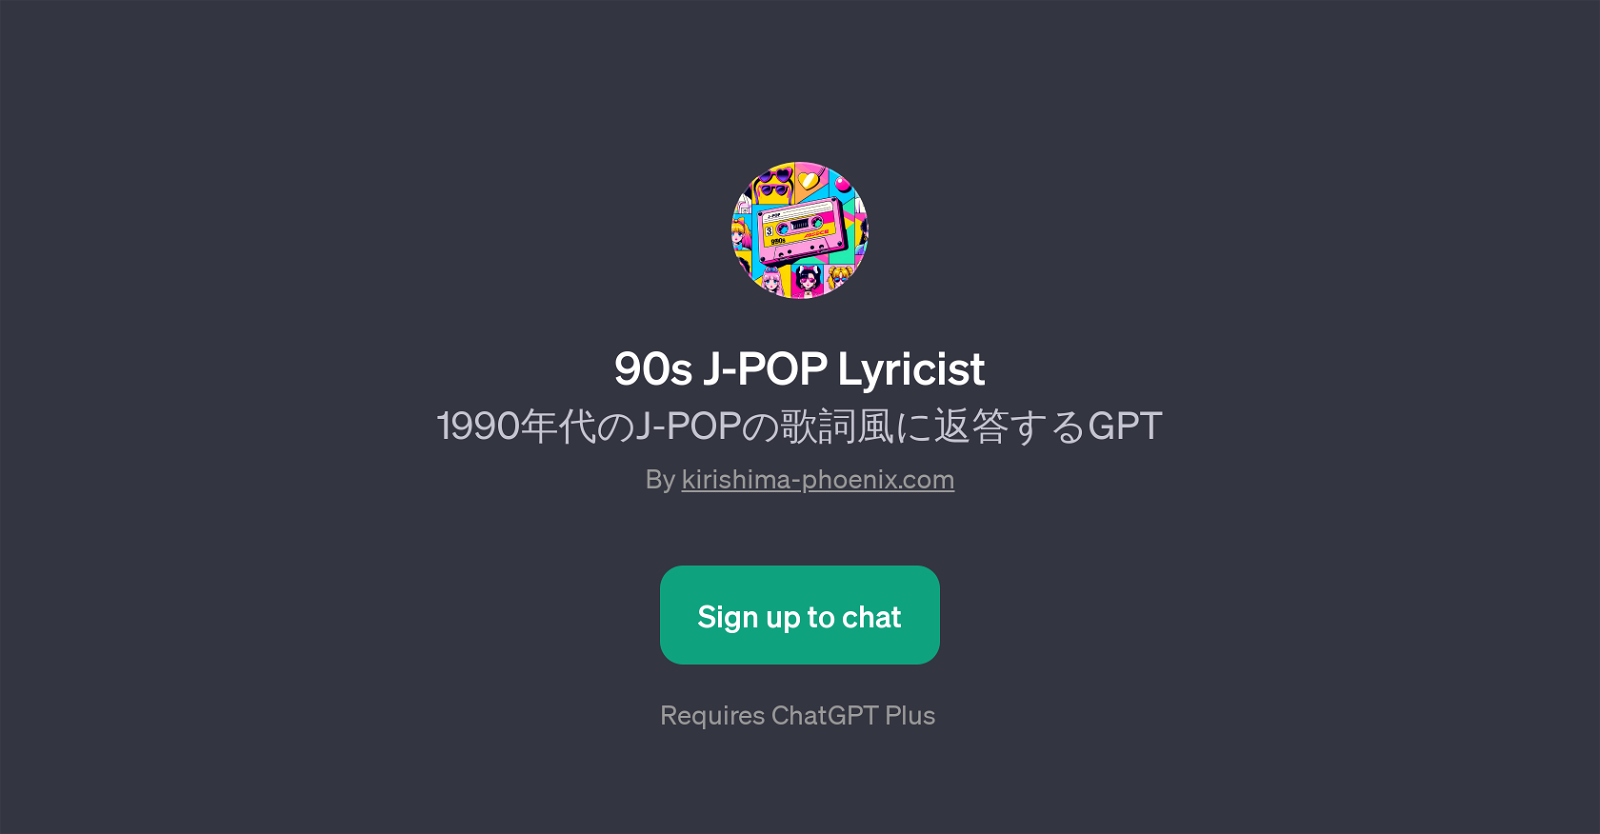 90s J-POP Lyricist website